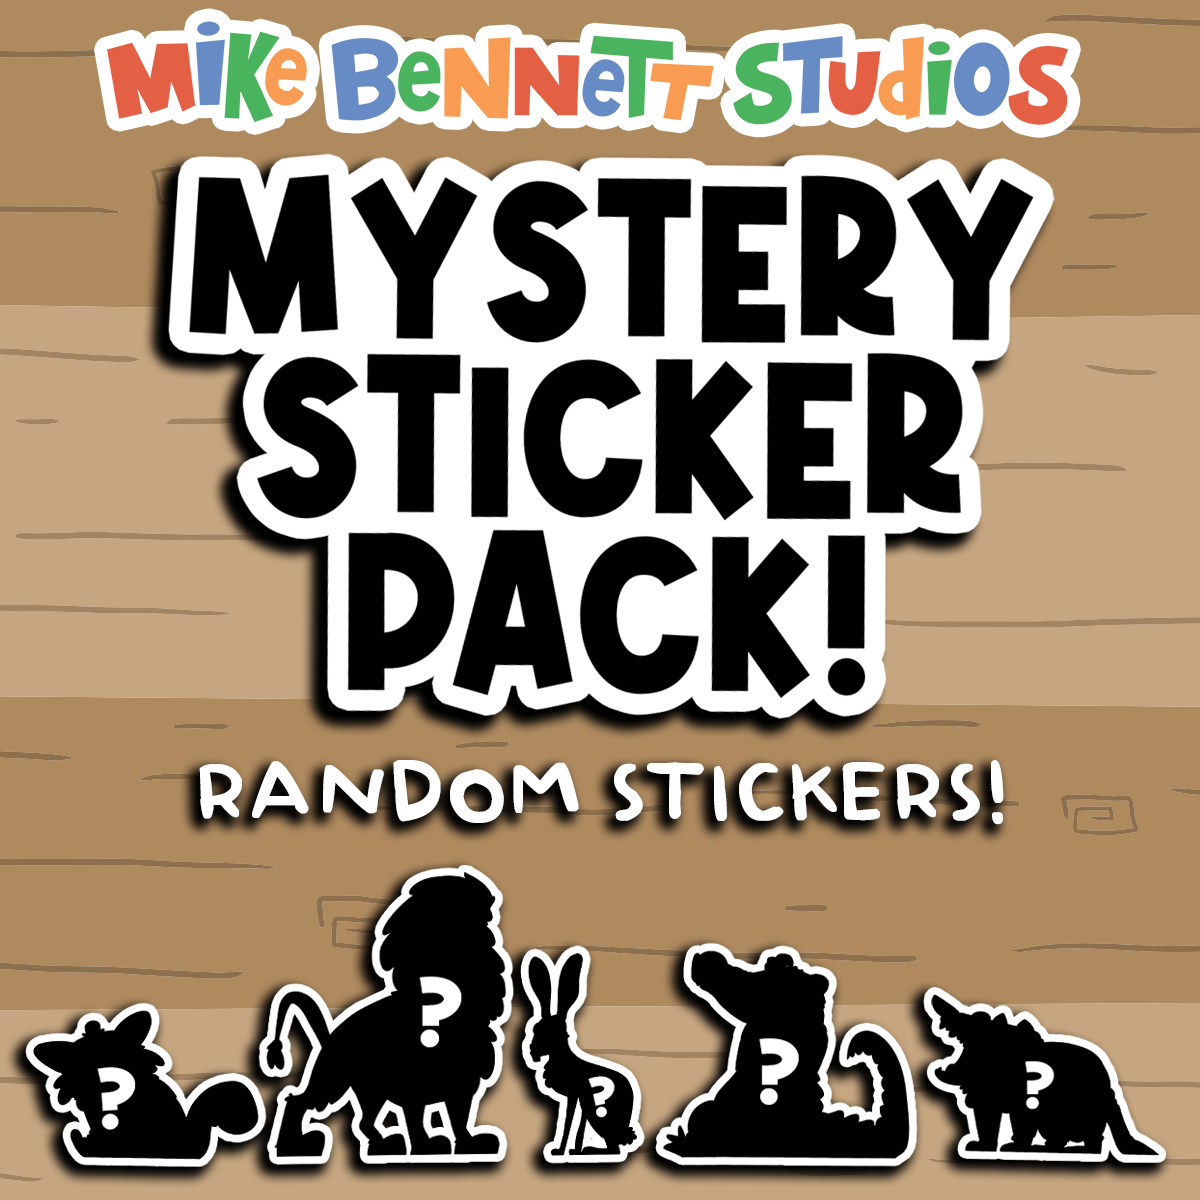 Mike Bennett Studios - Sticker Packs